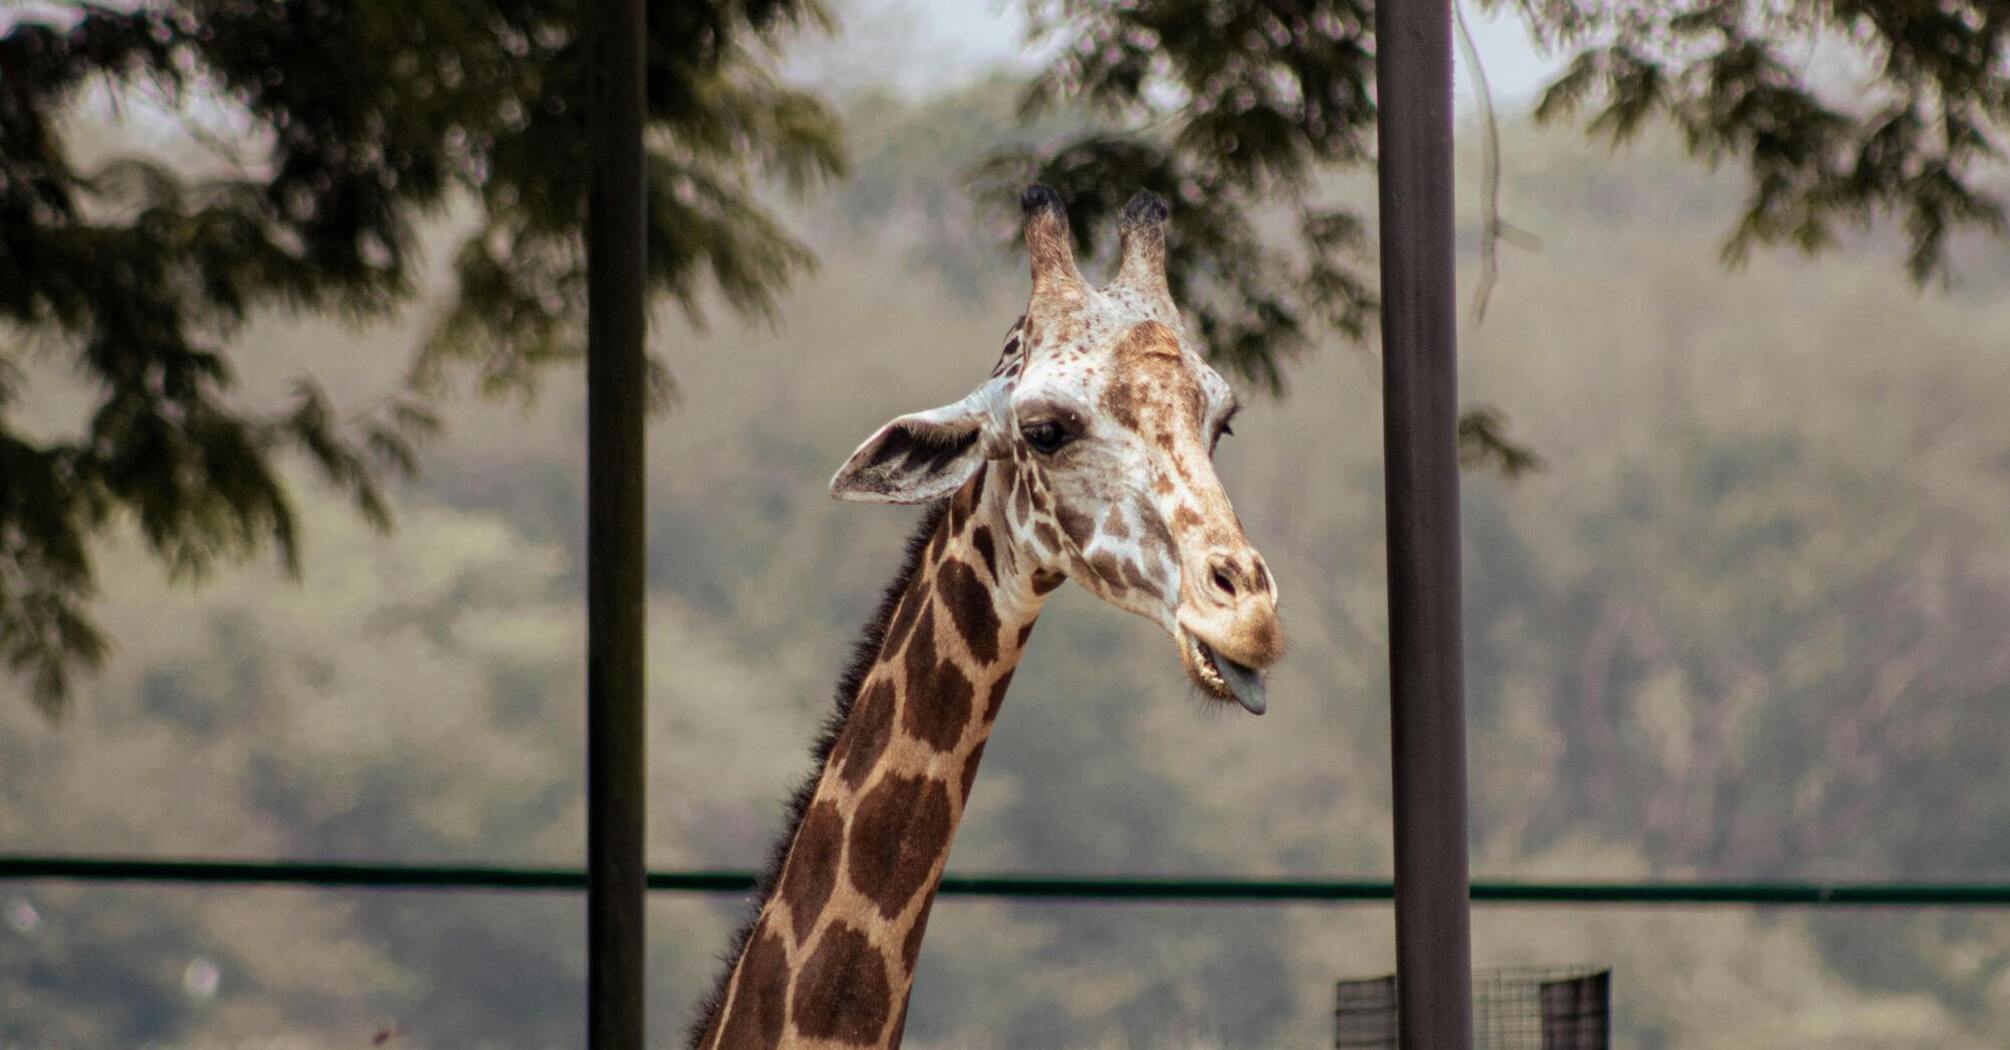 Ohio's Cincinnati Zoo named one of the best zoos in America